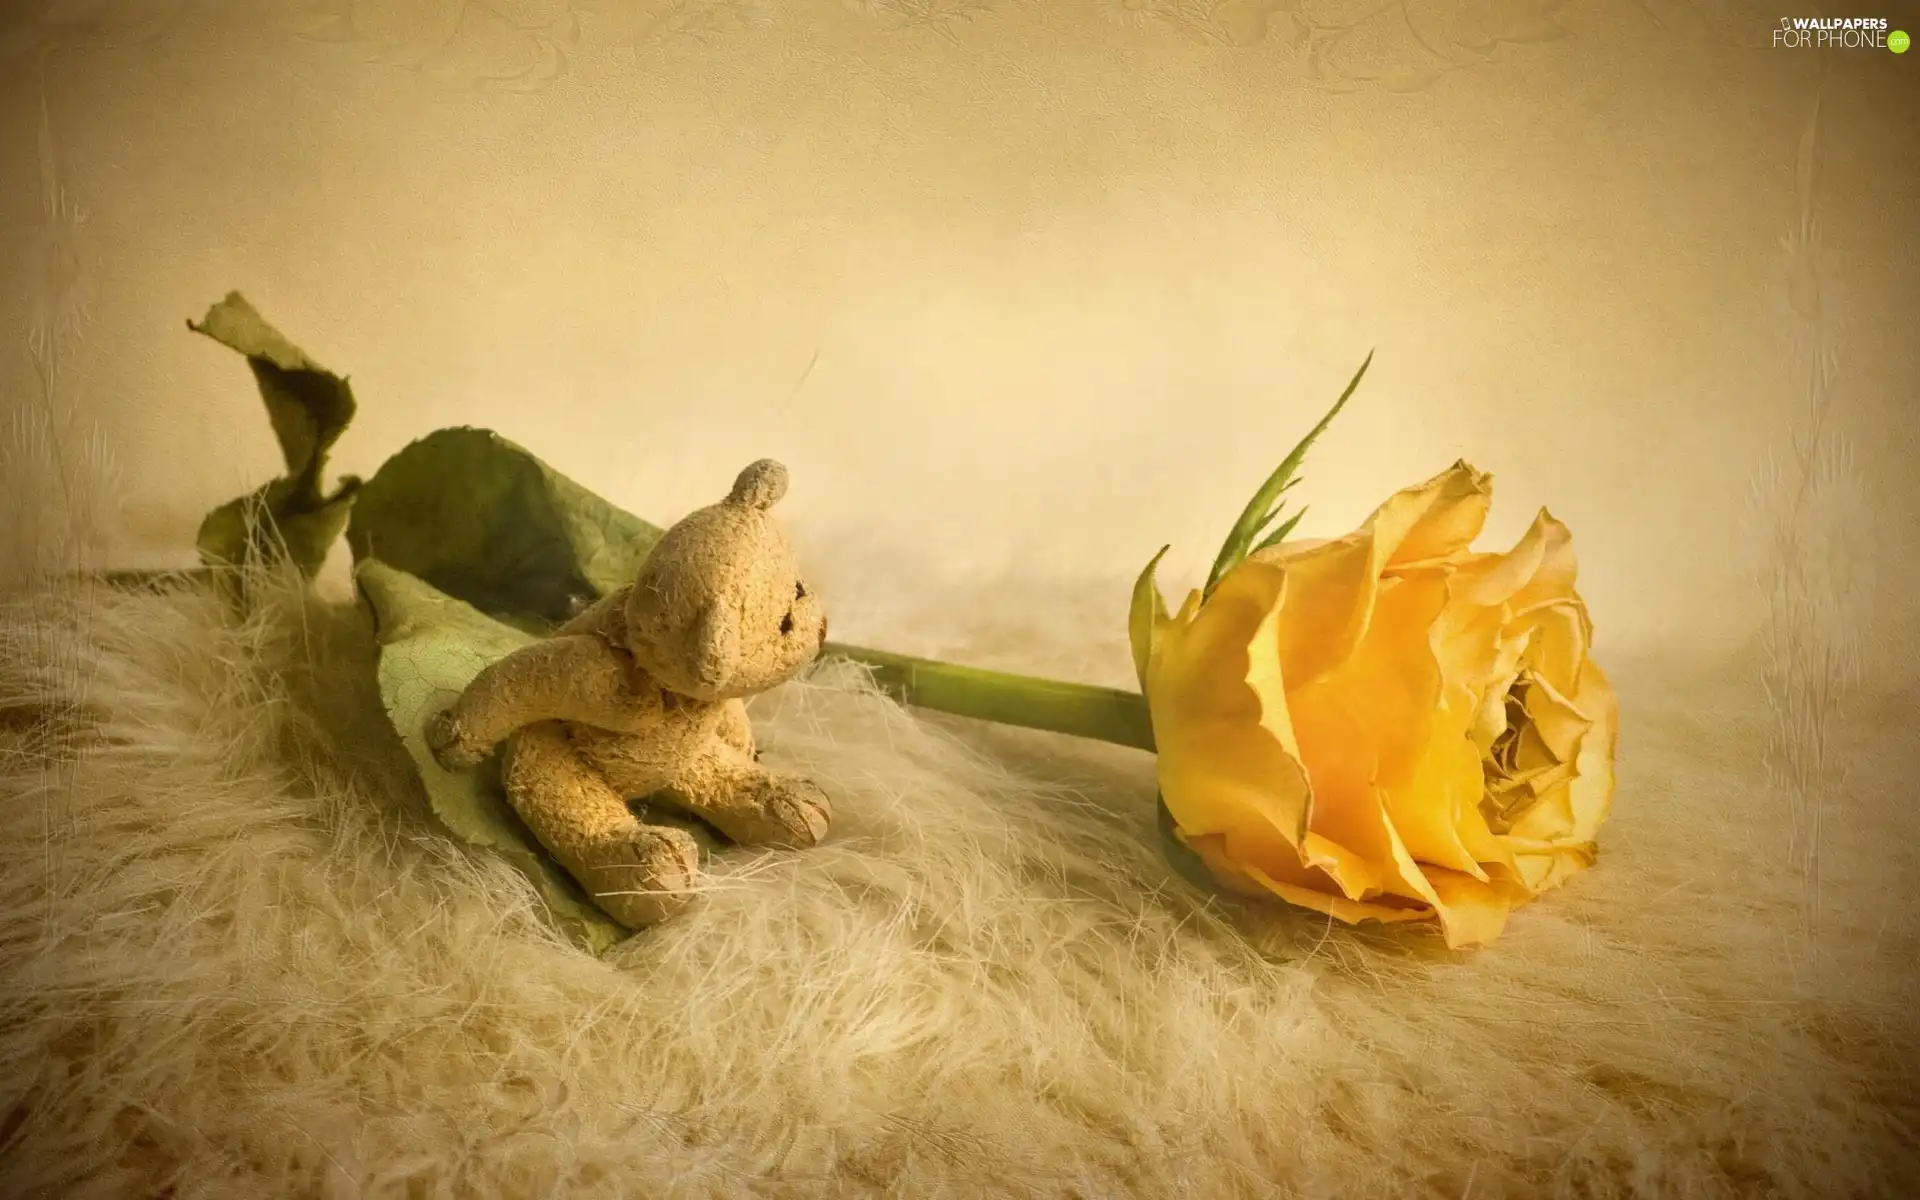 teddy bear, Yellow Honda, rose